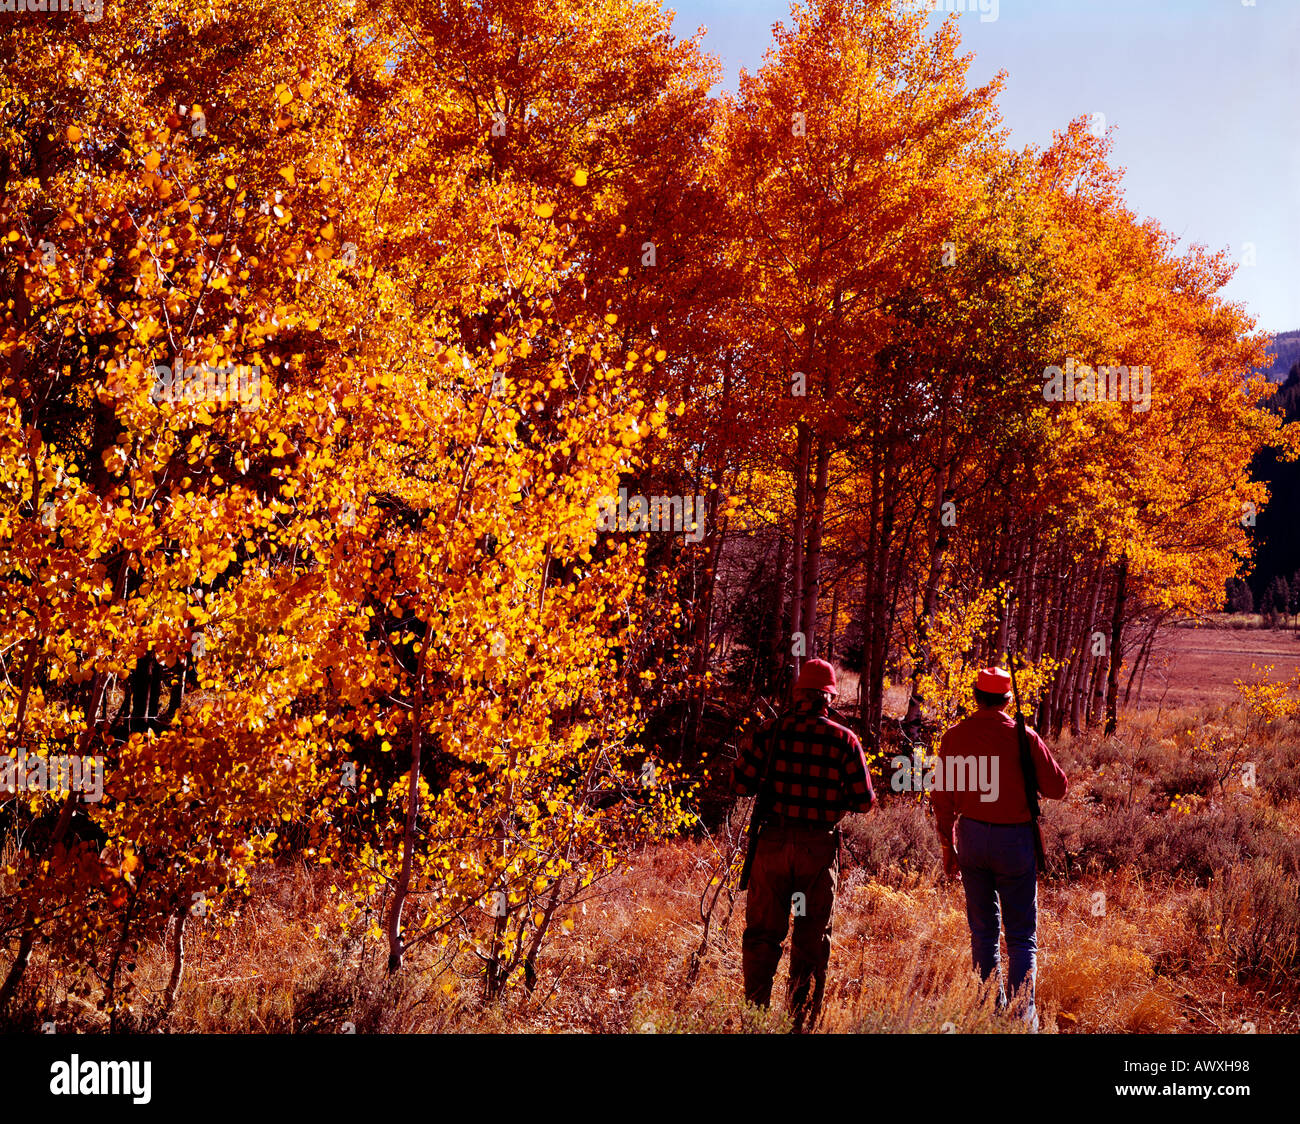 Deux chasseurs de gros gibier entrer dans un bosquet de trembles mis aux couleurs de l'Automne doré Banque D'Images